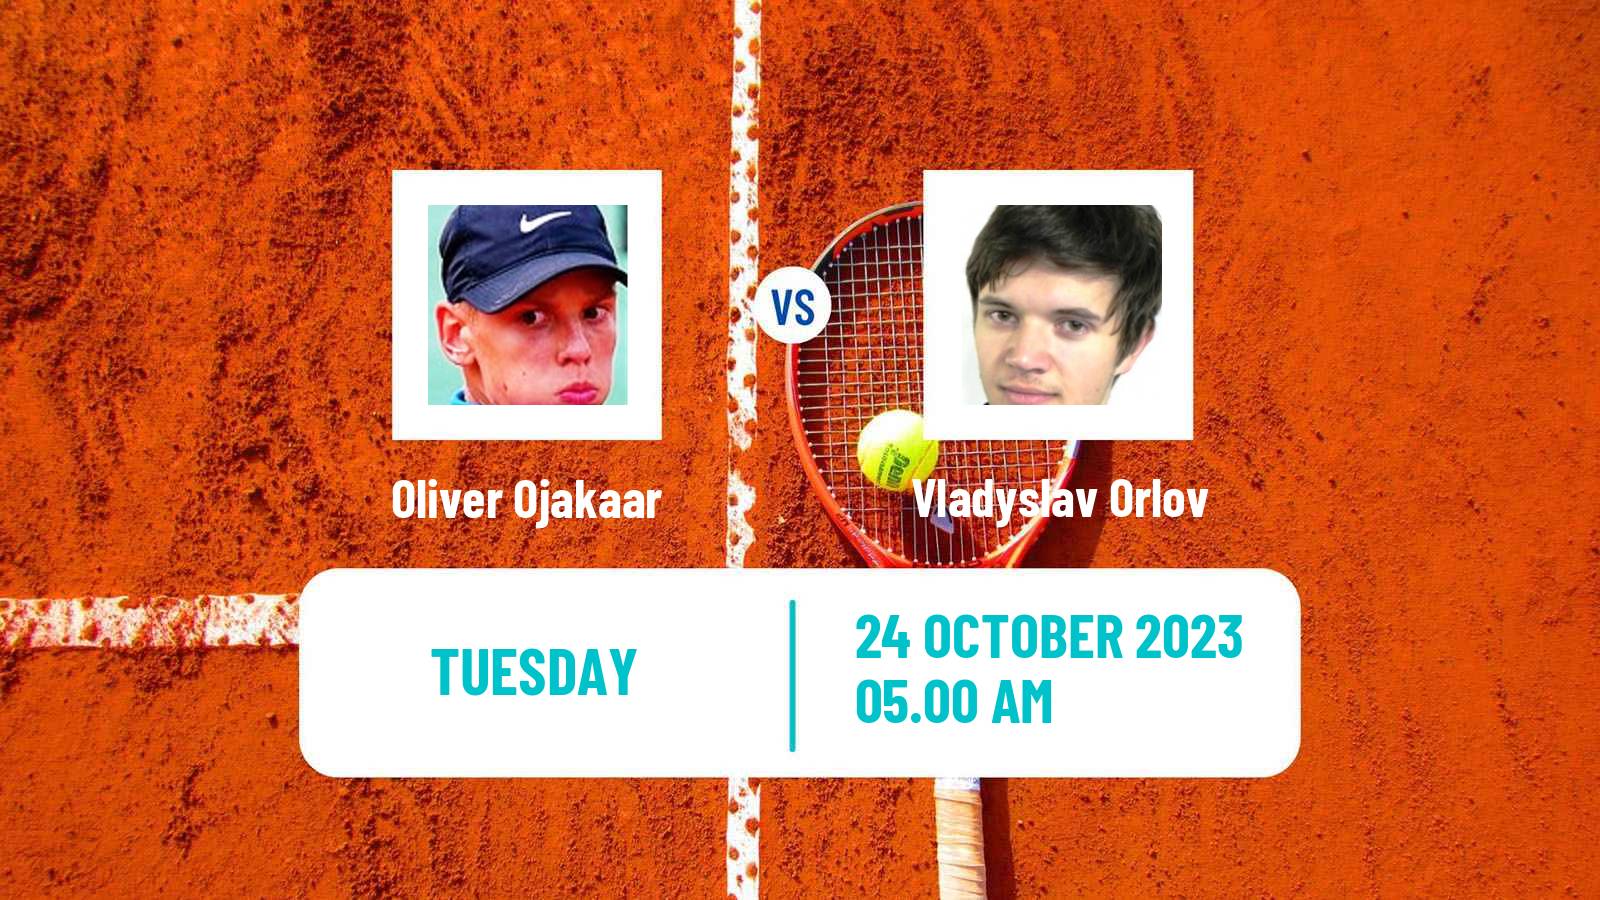 Tennis ITF M15 Heraklion 4 Men 2023 Oliver Ojakaar - Vladyslav Orlov